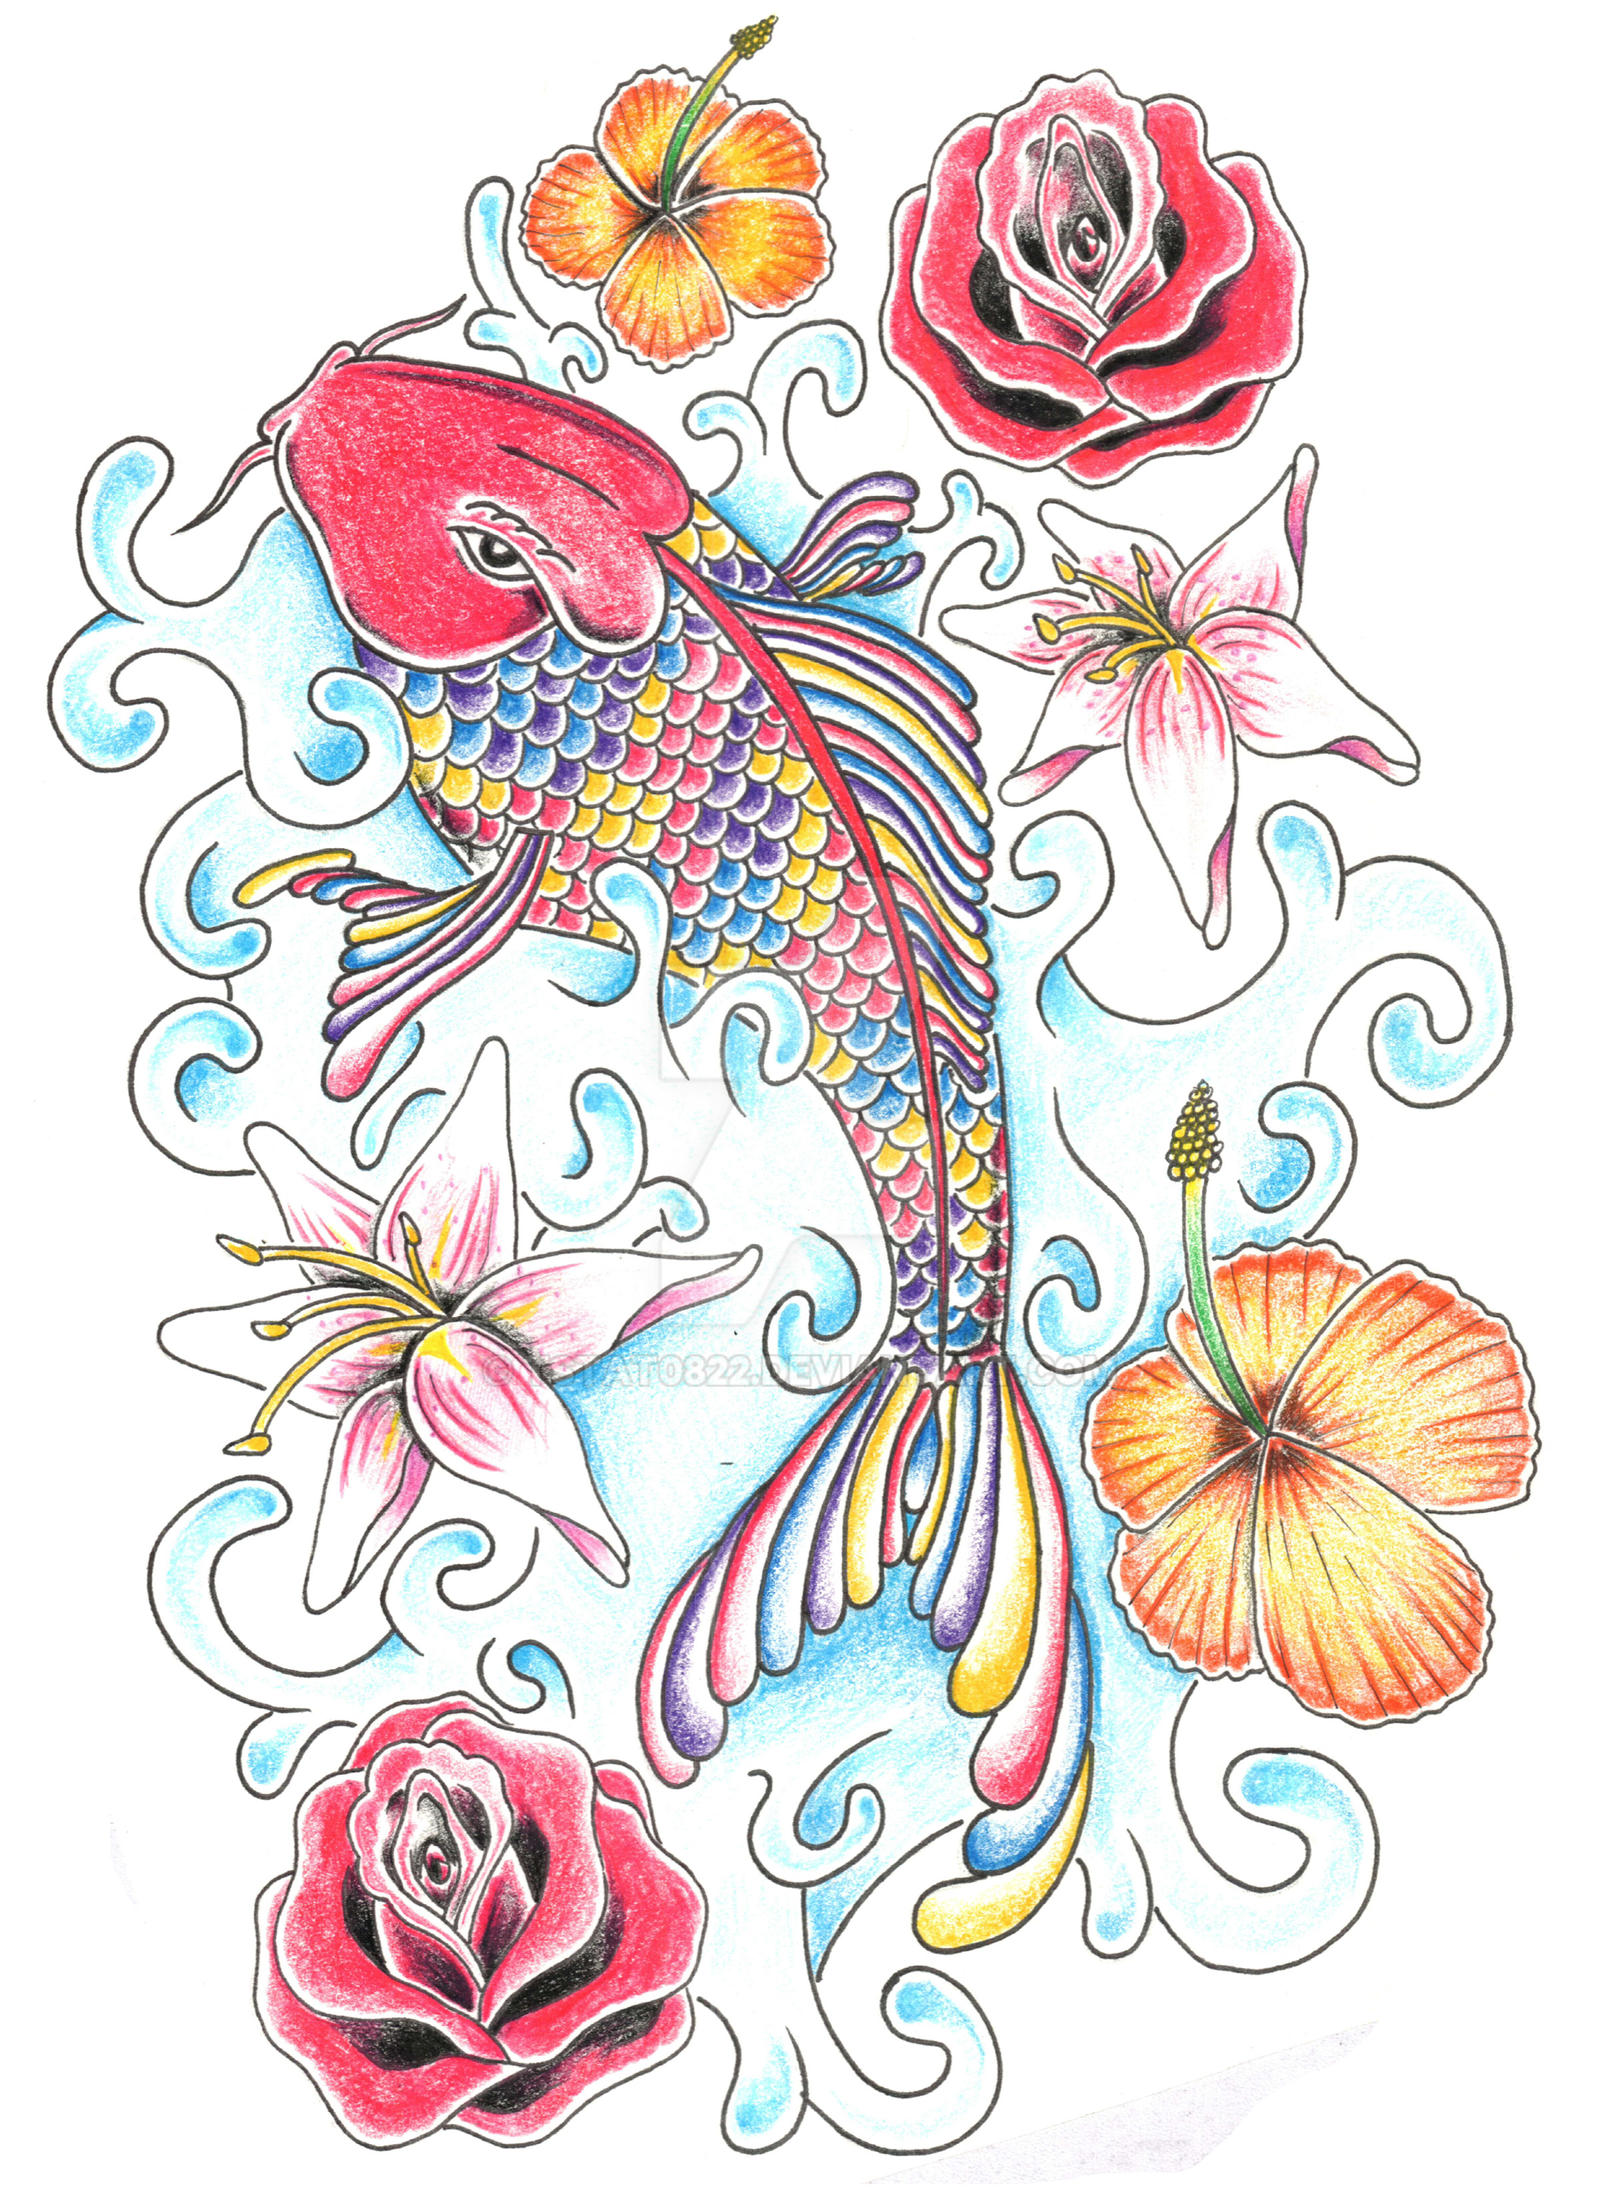 Rainbow Koi Fish by tstat0822 on DeviantArt